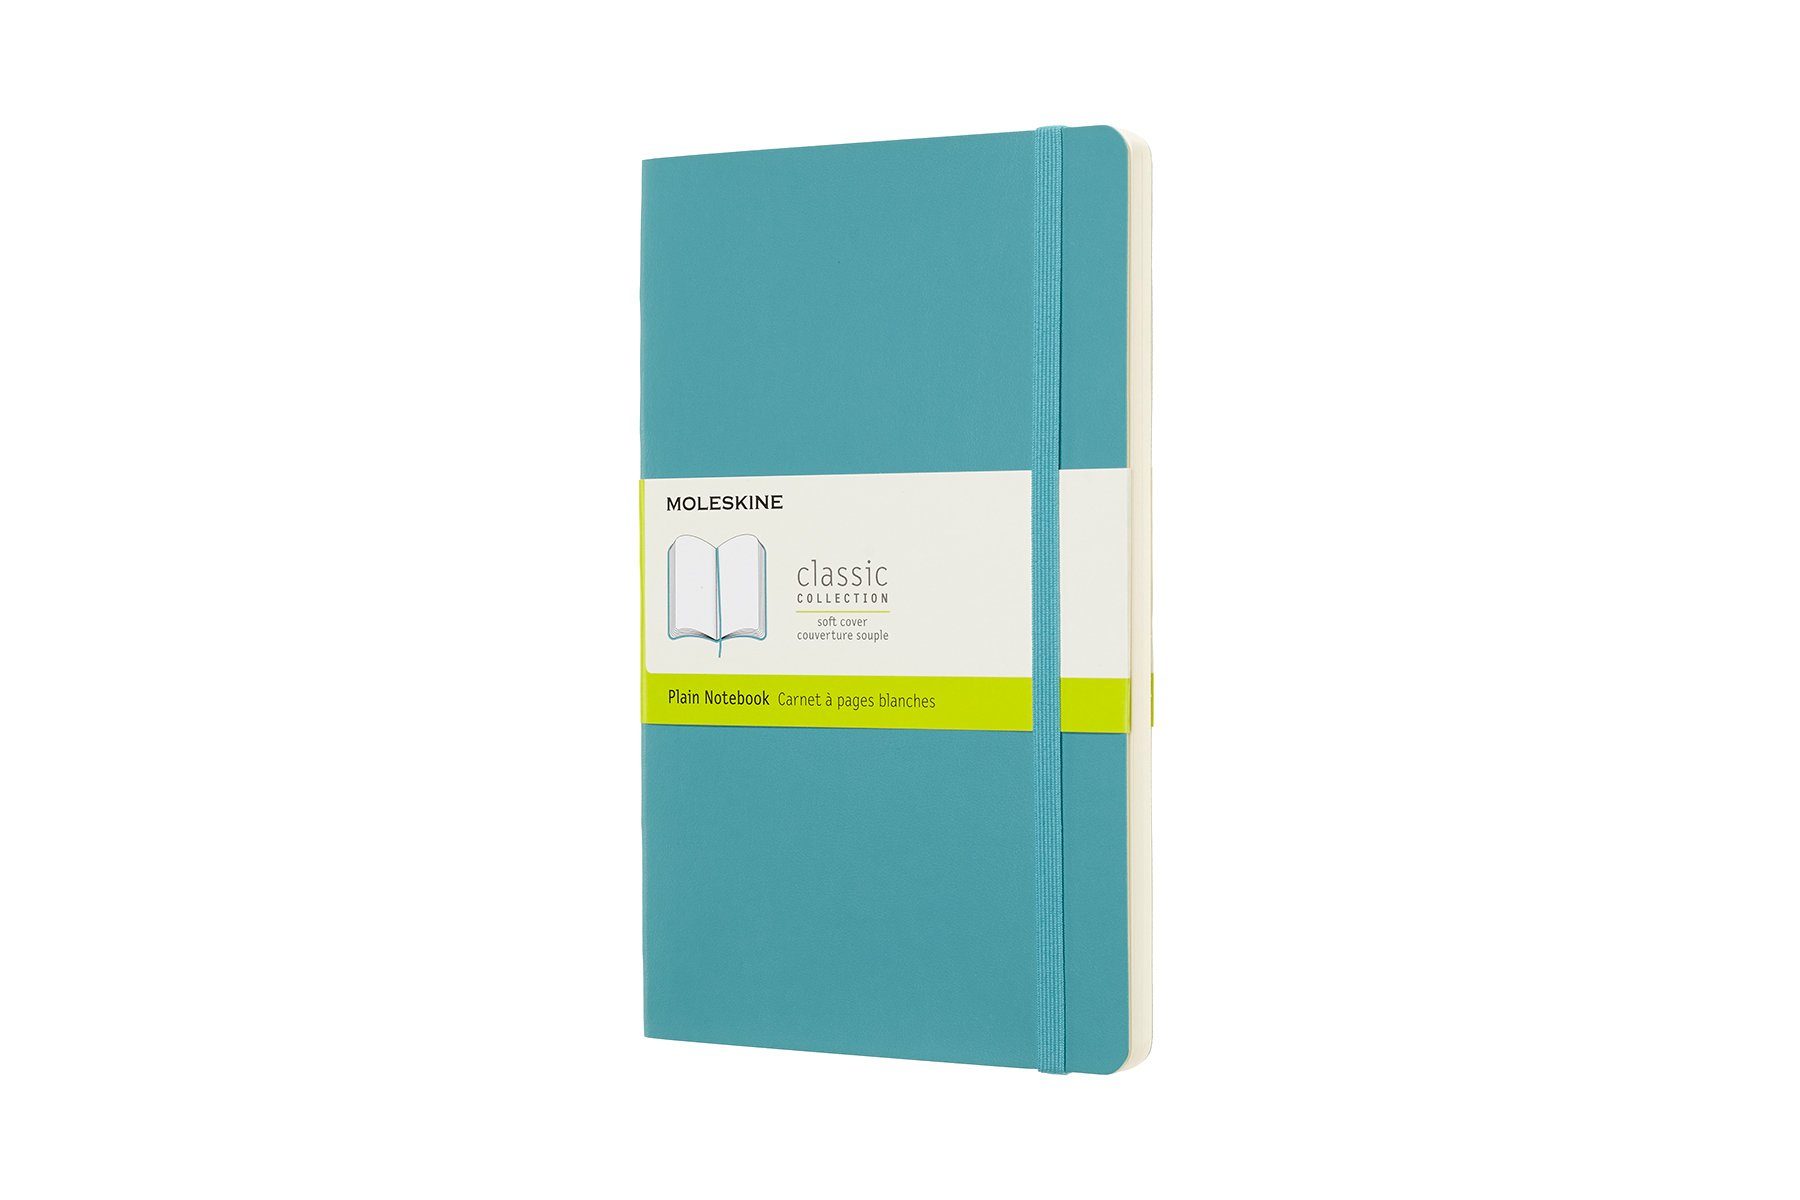 MOLESKINE Notizbuch, Classic Collection - Soft Cover - L/A5 Groß (13x21) - mit weichem Einband - 70g-Papier Riff Blau